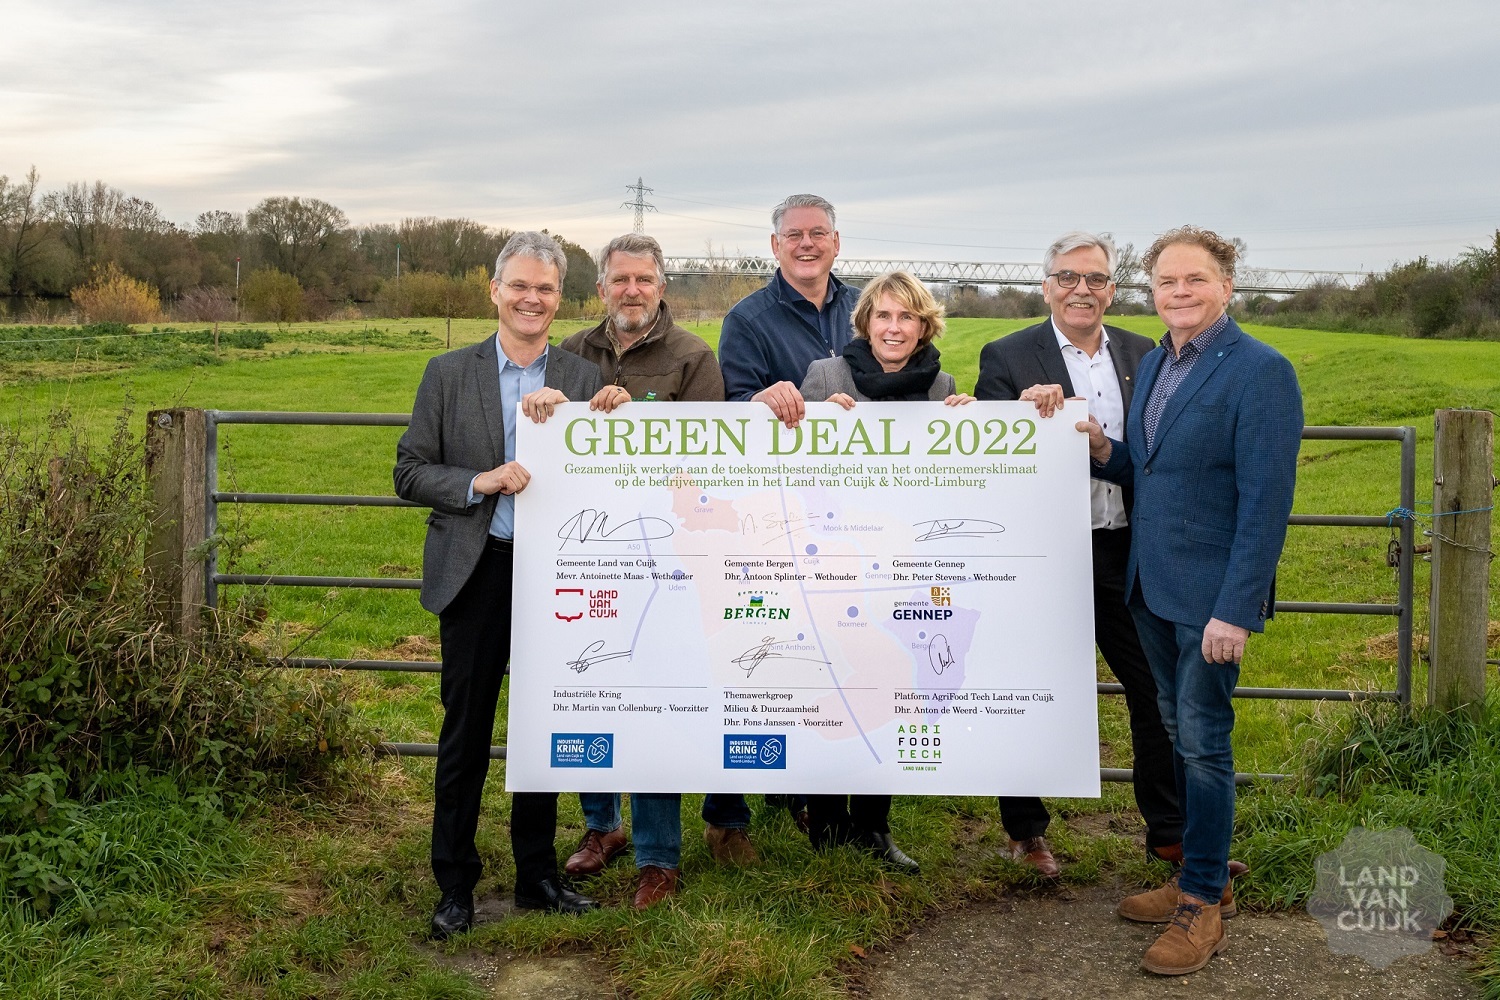 Bedrijventerreinen Land van Cuijk en Noord-Limburg stimuleren verduurzaming met Green Deal